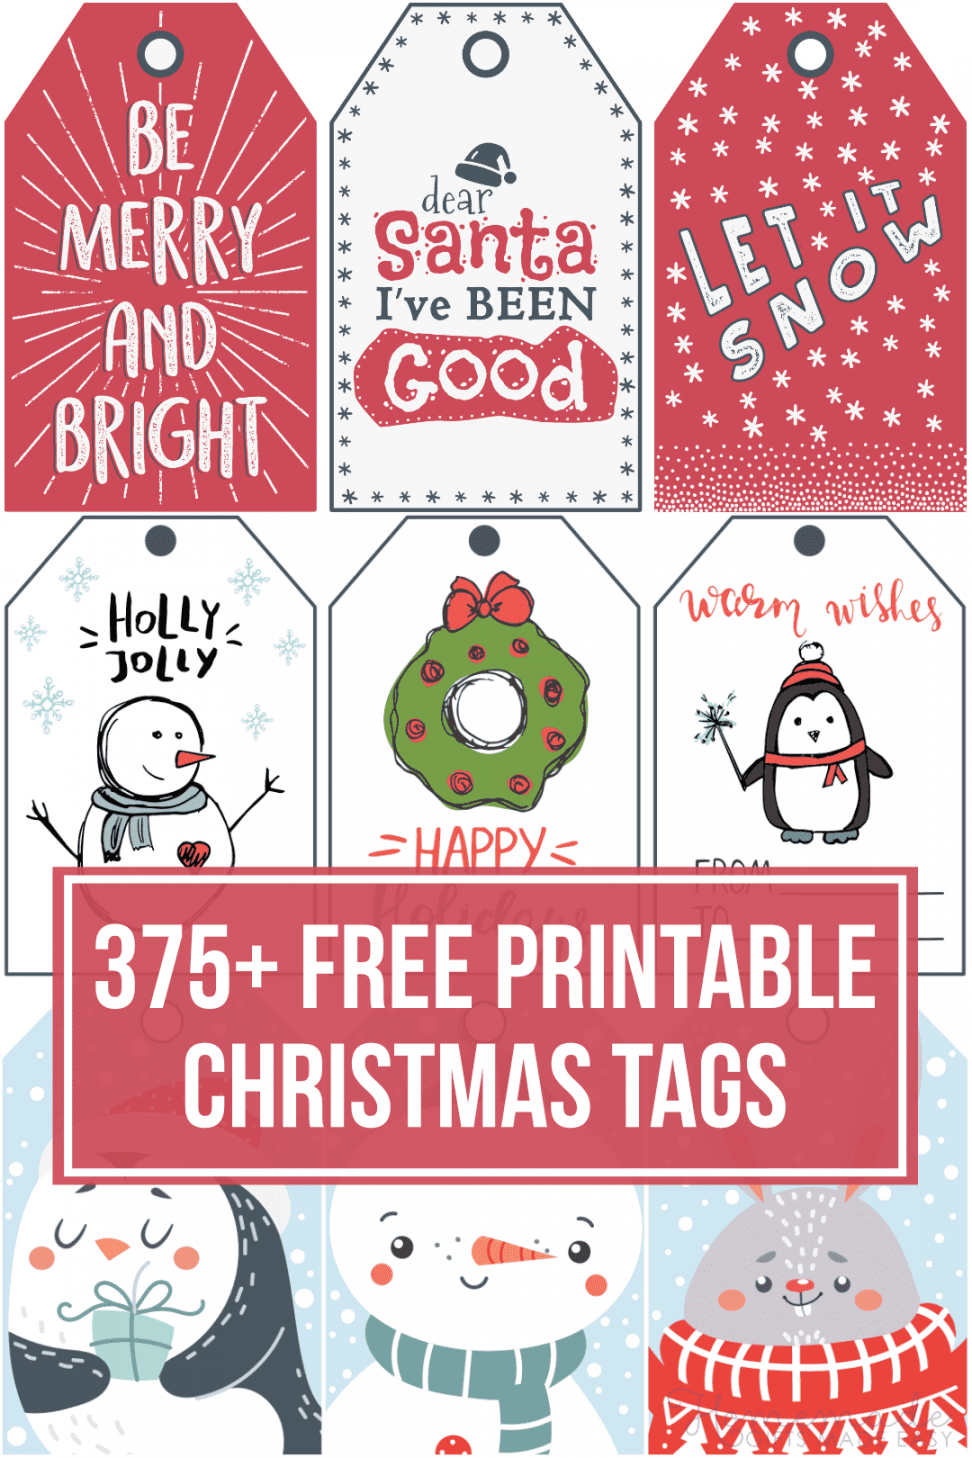 + Free Printable Christmas Tags for your Holiday Gifts - FREE Printables - Free Printable Christmas Gift Tags